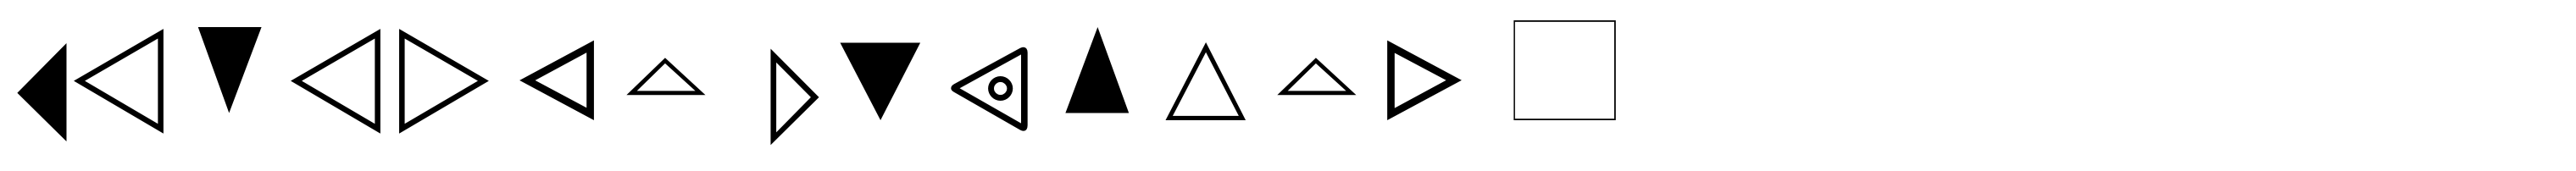 General Symbols 4